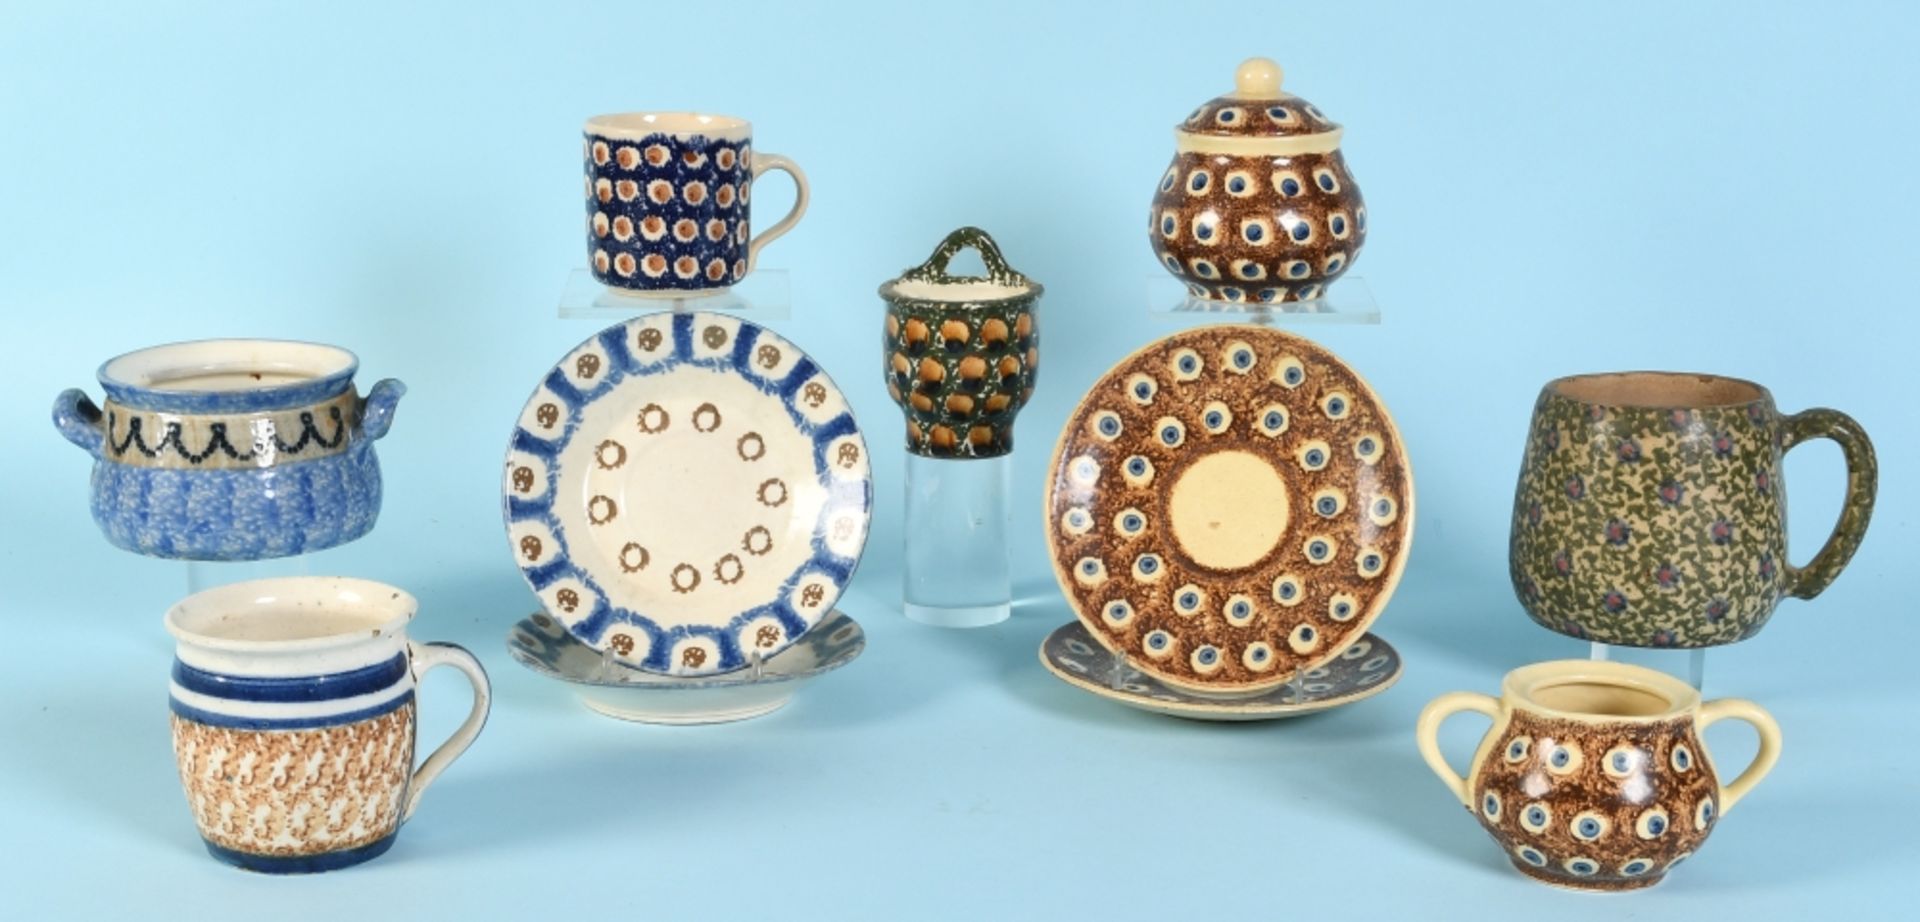 Keramikteile, 11 Stück "Bunzlau"